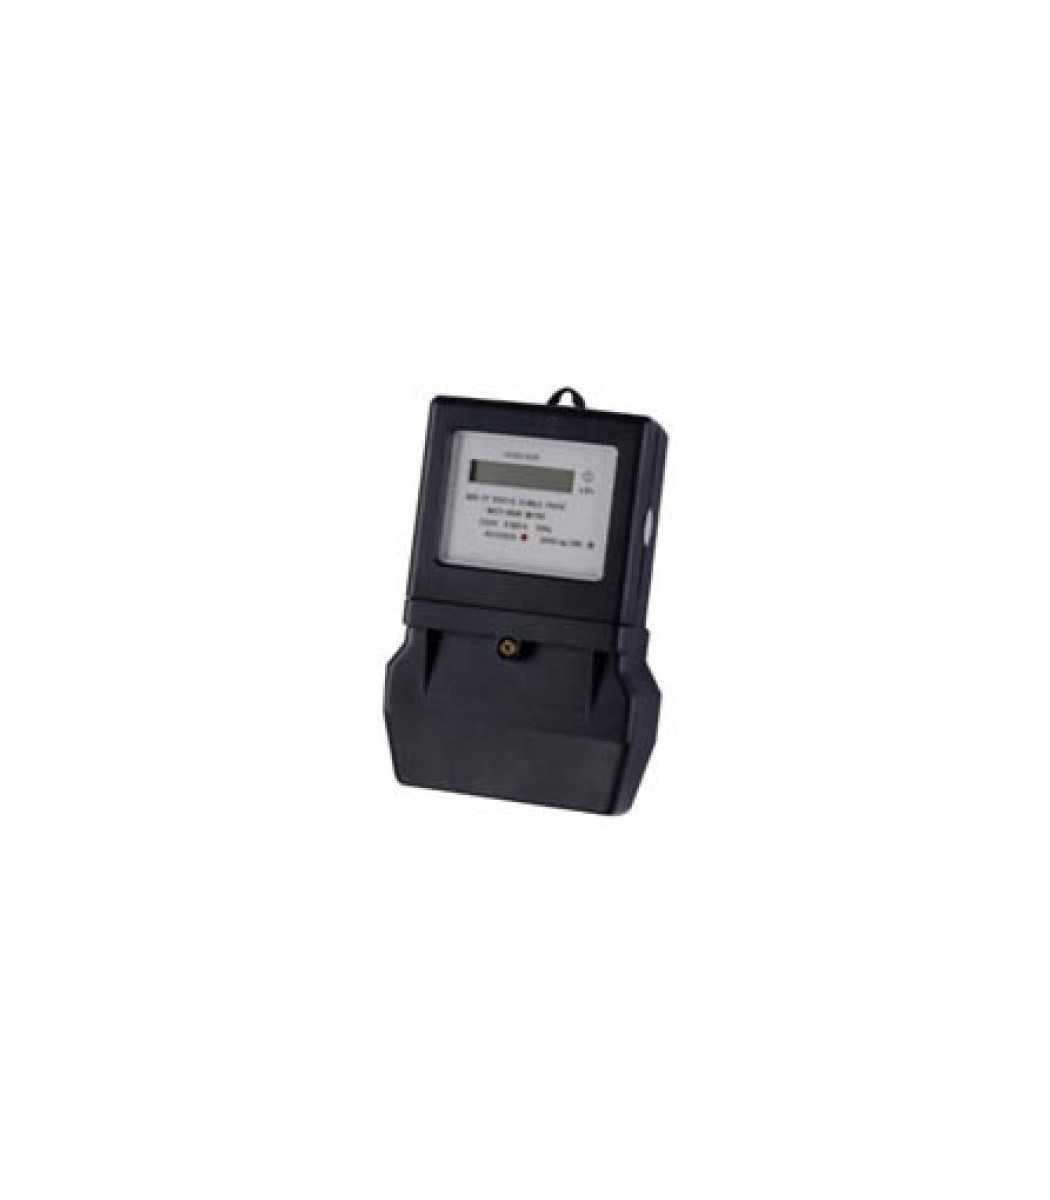 Kwh Meter Price Digital Electric Meter Electrical LCD ENERGY Mete